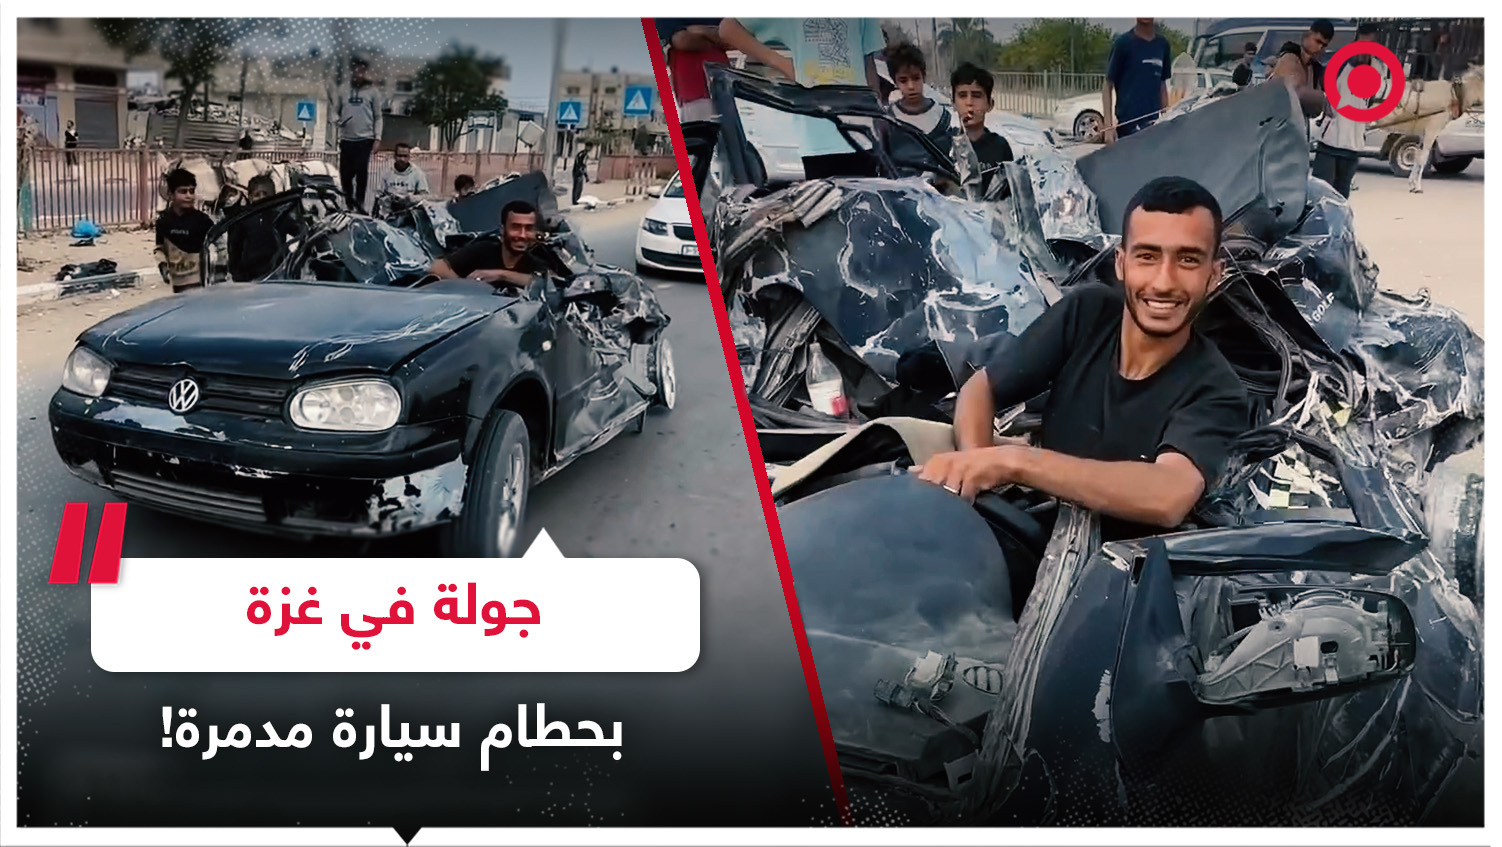 فلسطيني من غزة يتجول بحطام سيارته التي تعرضت للقصف في مدينة خان يونس